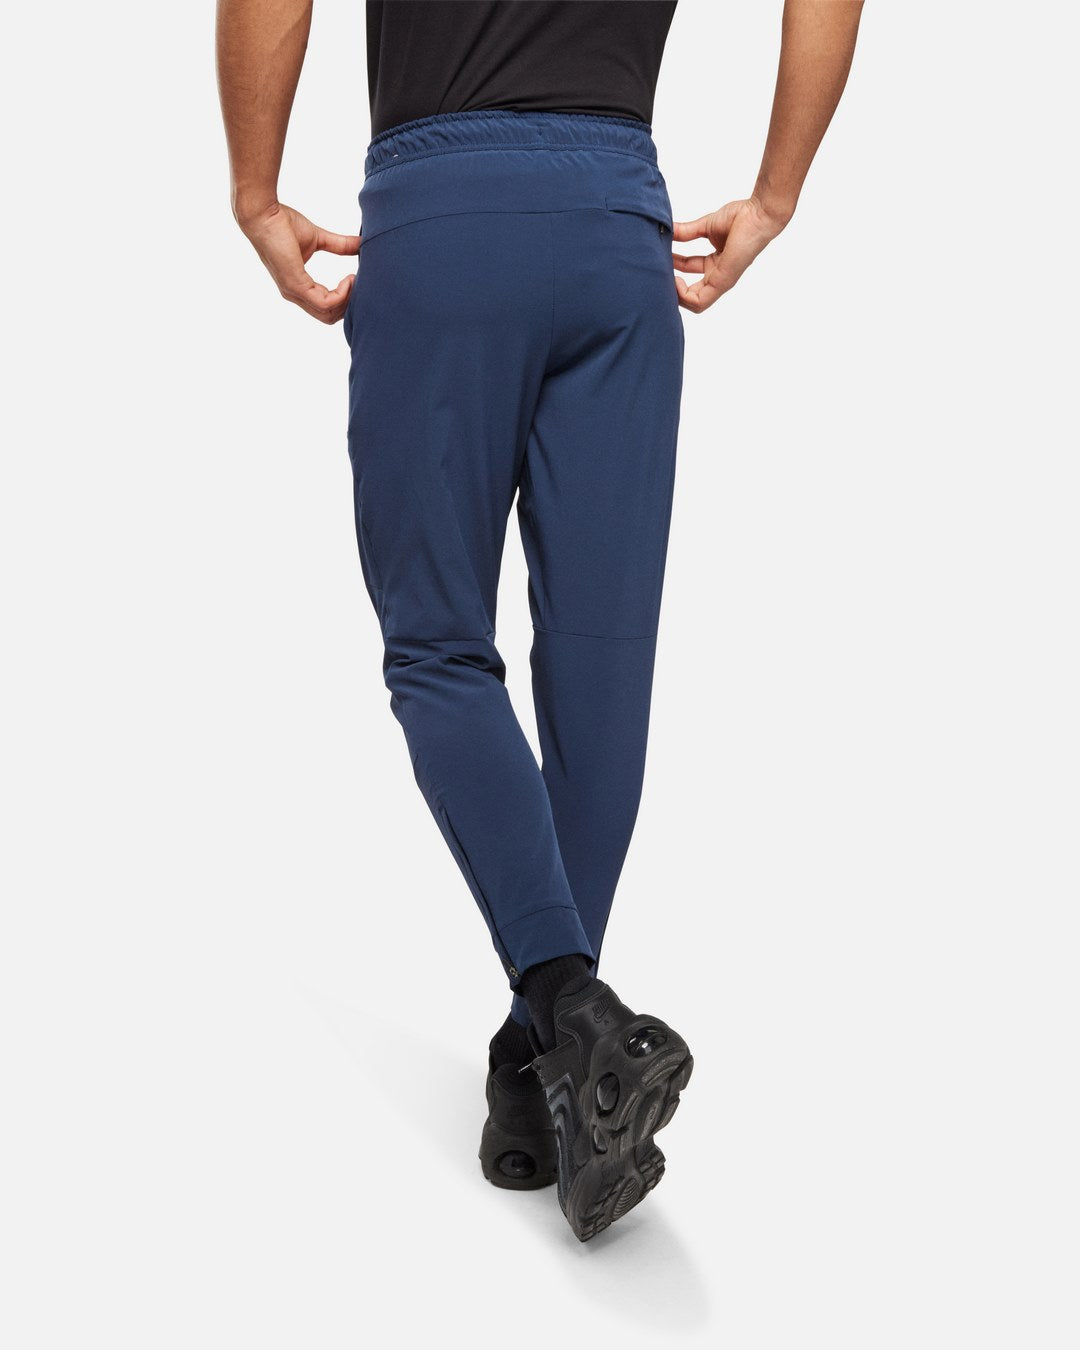 Pantaloni da jogging Nike Unlimited - Blu scuro